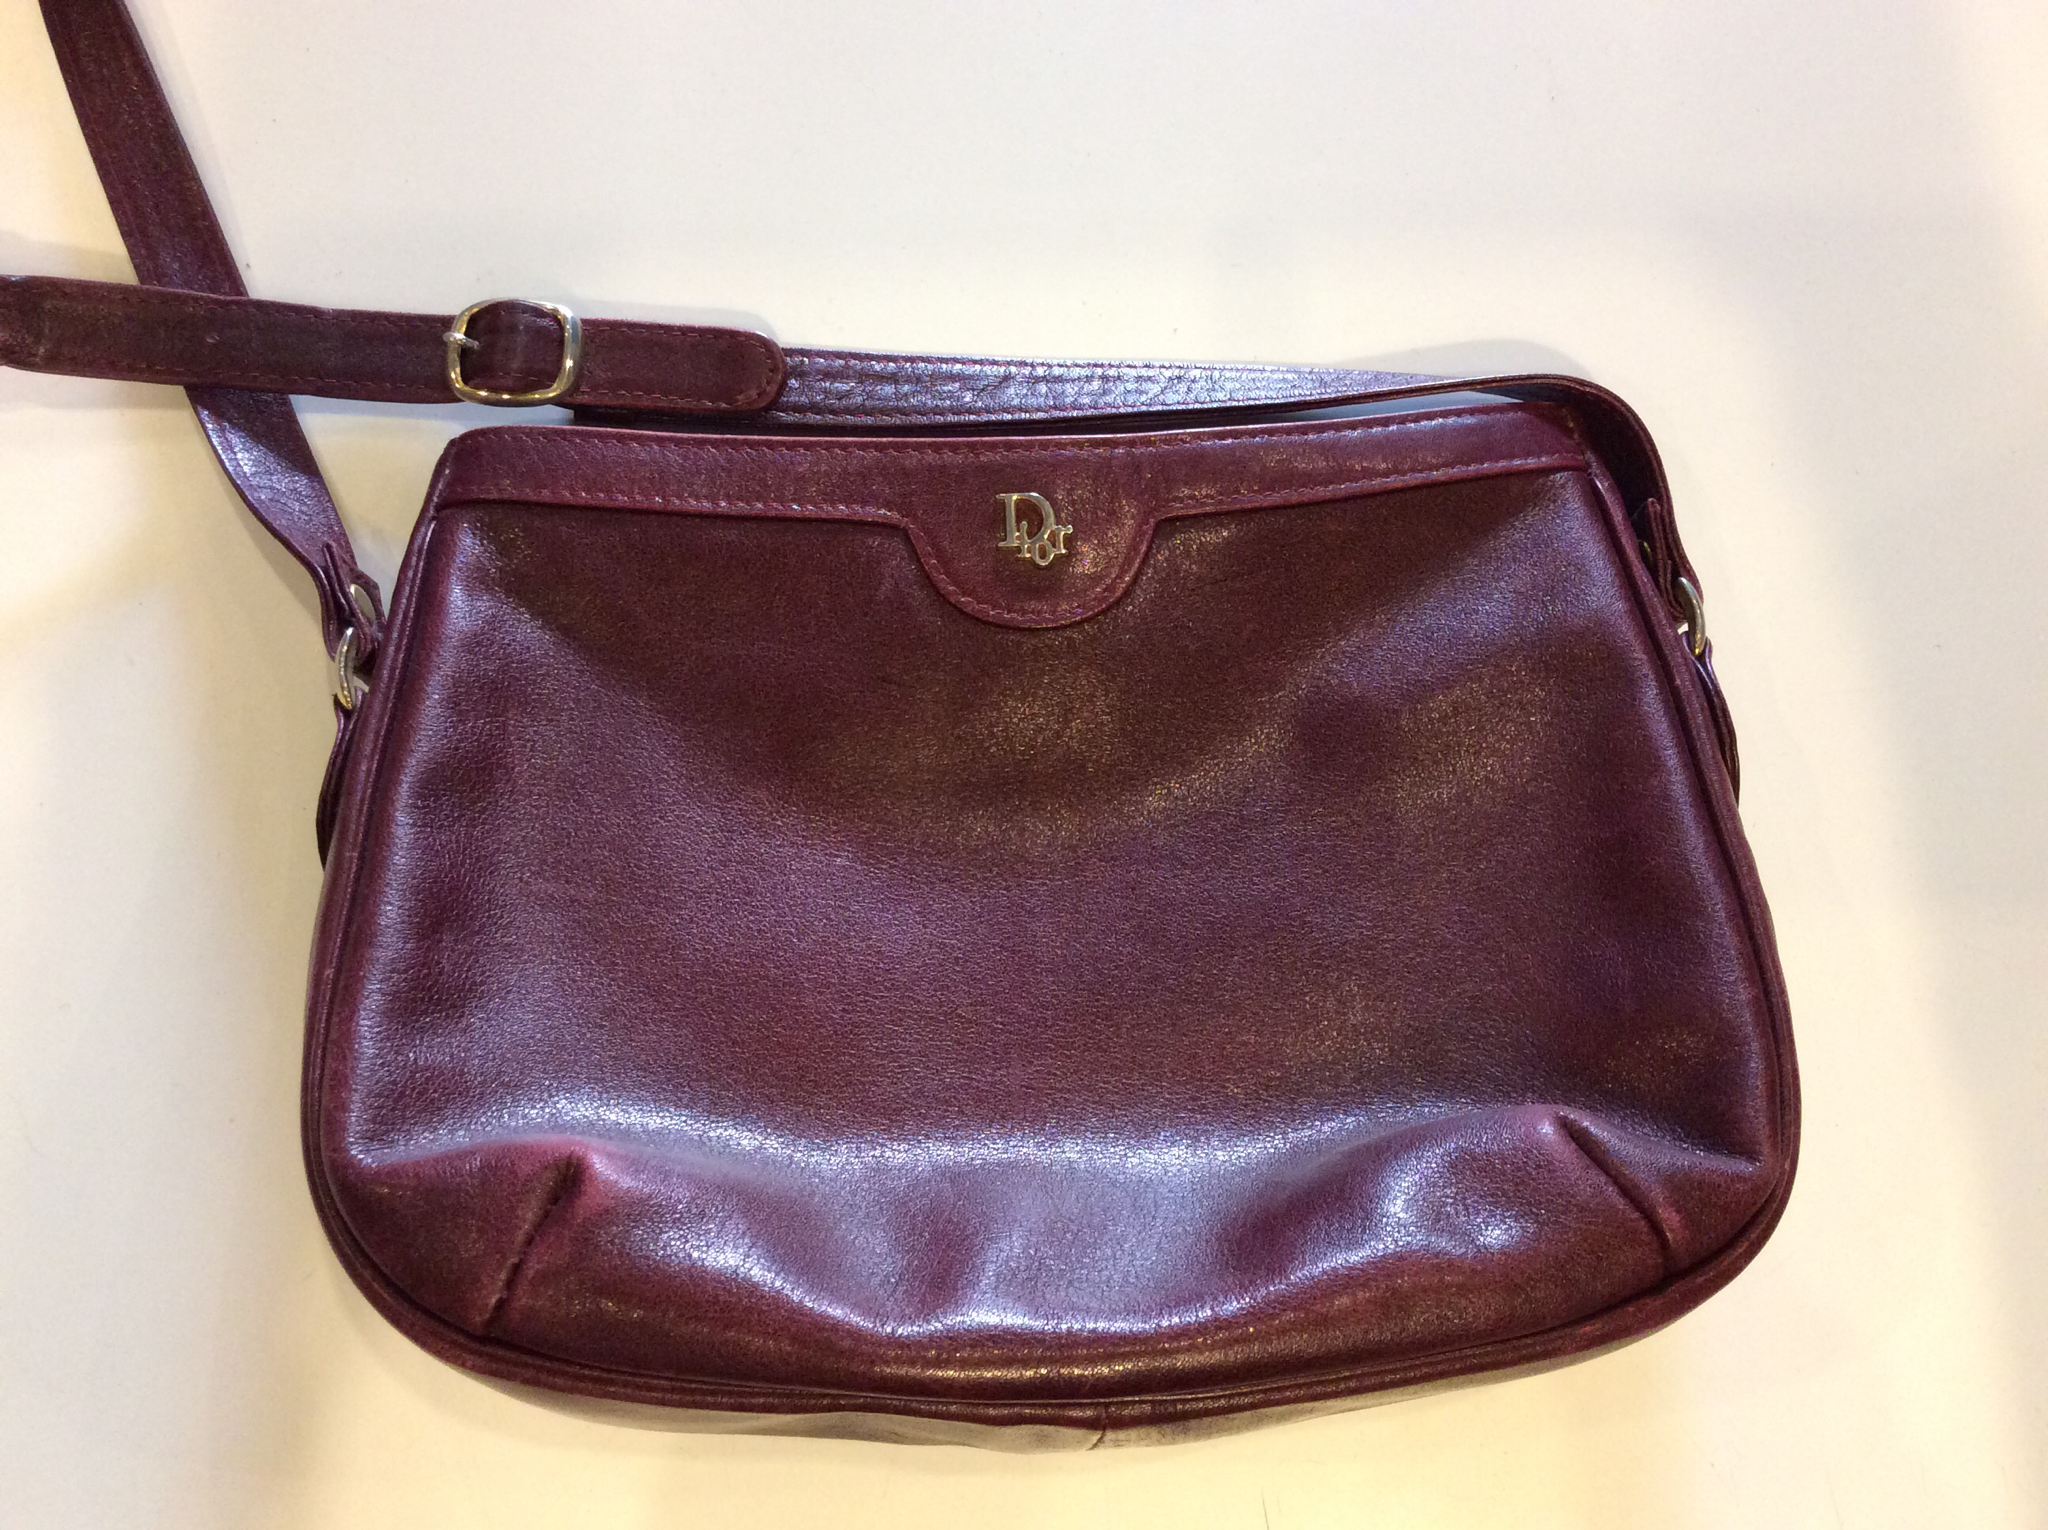 Dior maroon purse